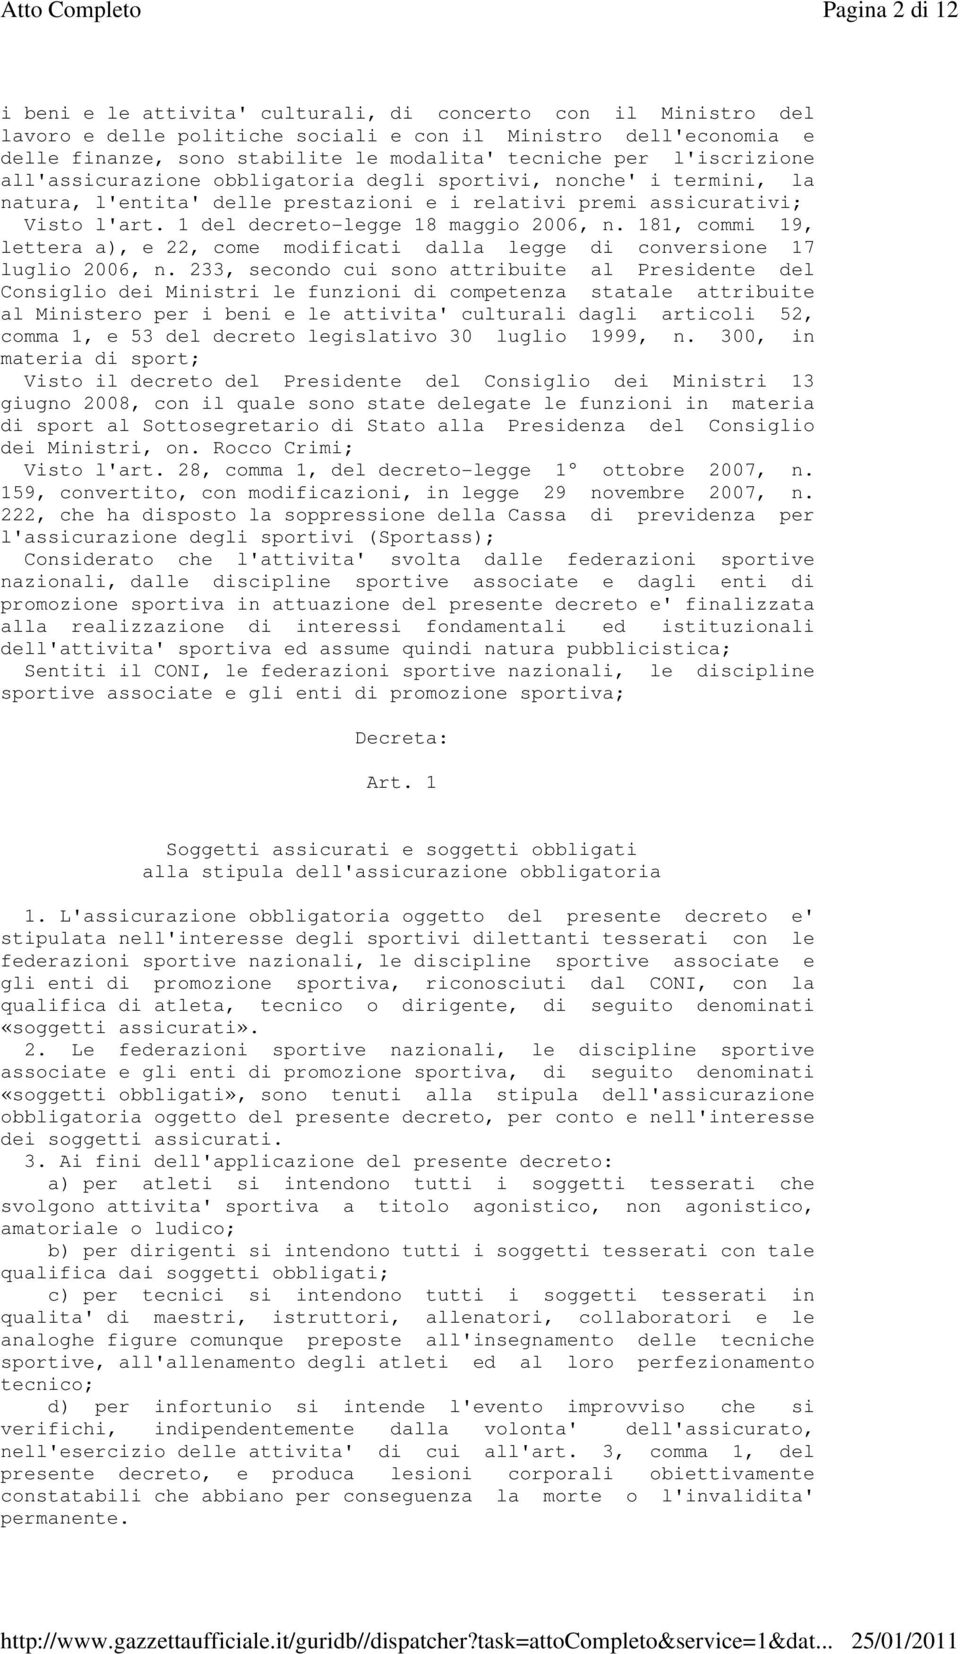 1 del decreto-legge 18 maggio 2006, n. 181, commi 19, lettera a), e 22, come modificati dalla legge di conversione 17 luglio 2006, n.